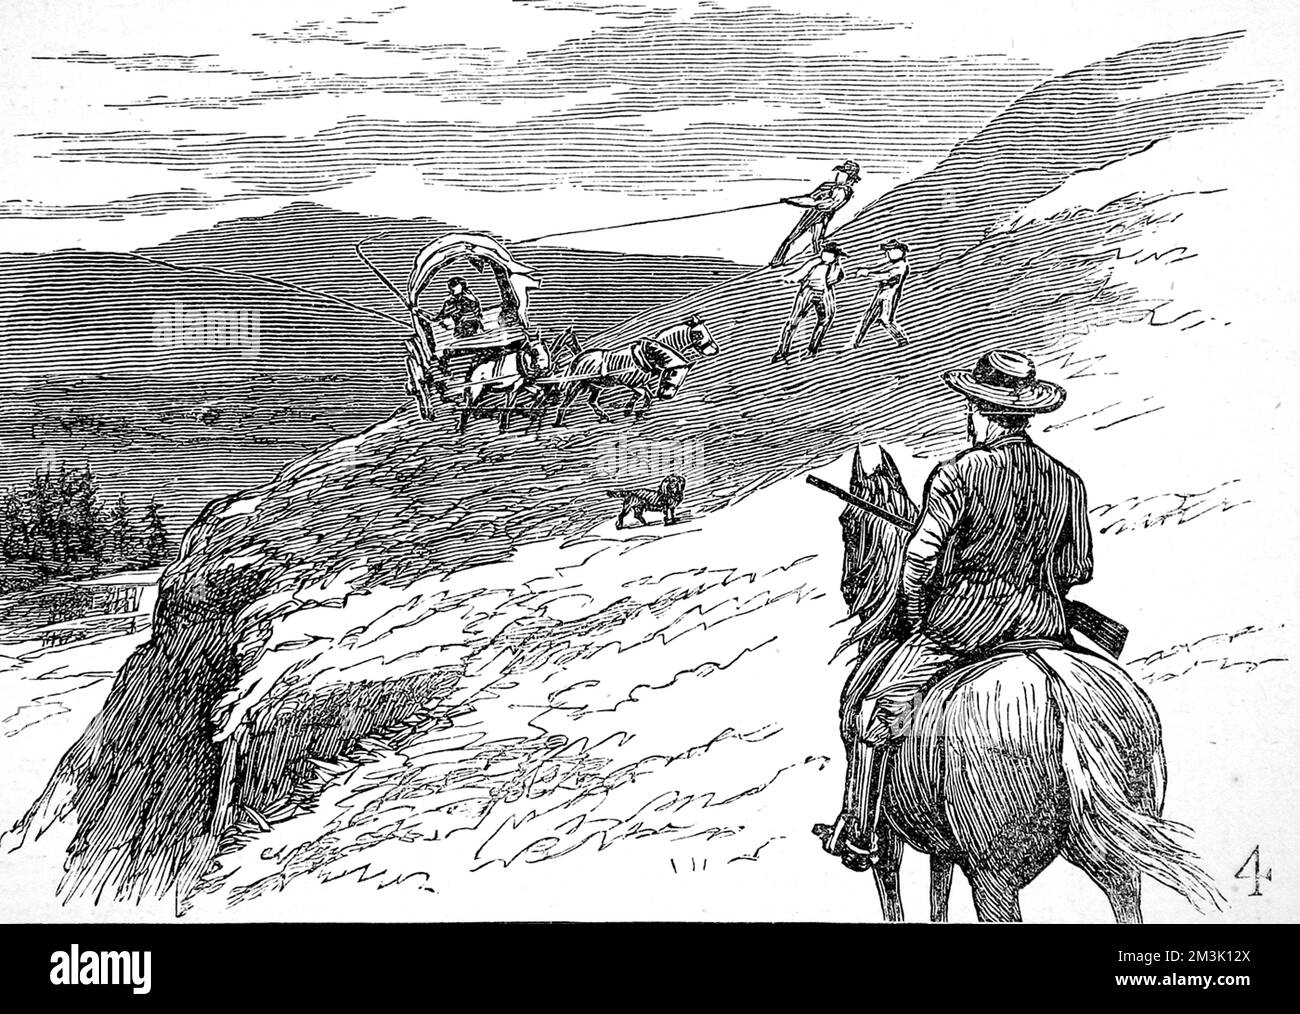 Un wagon faisant son chemin autour d'une colline escarpée au-dessus de la rivière dans le parc national de Yellowstone. La rive de la rivière est si raide que trois hommes sont nécessaires pour tirer des cordes pour maintenir le wagon droit. Banque D'Images